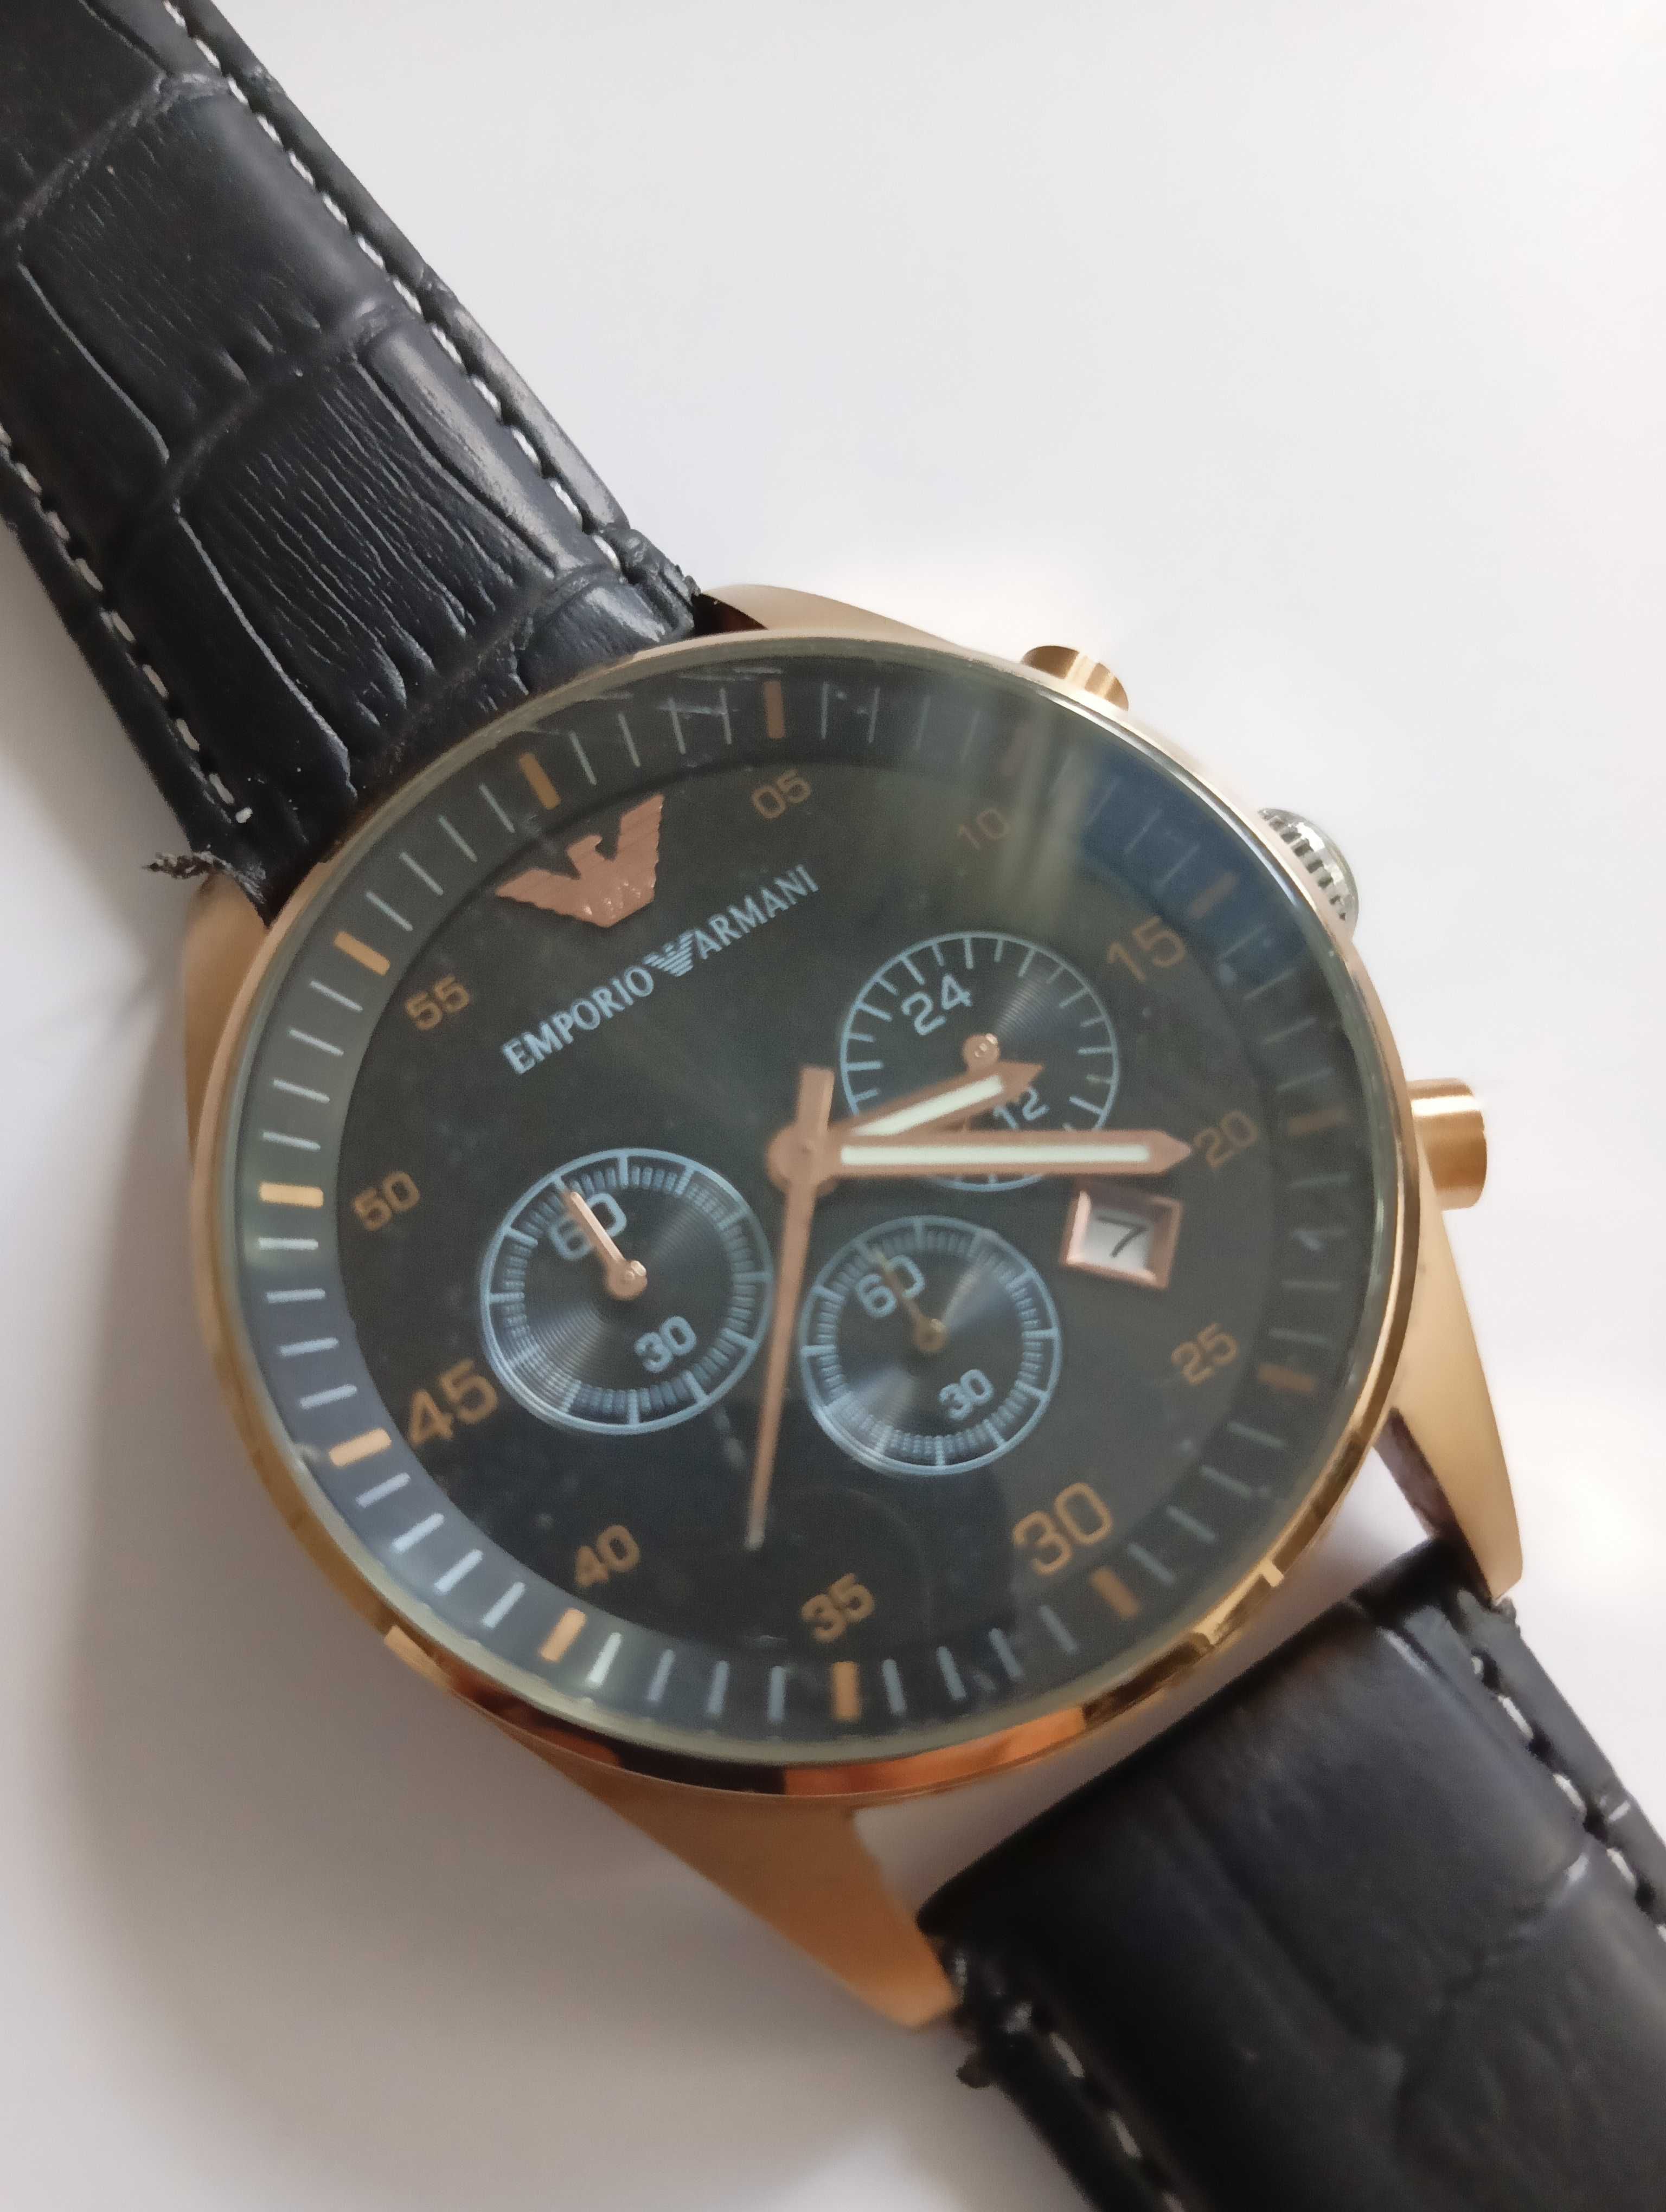 Emporio Armani AR-5905 chronograph gold